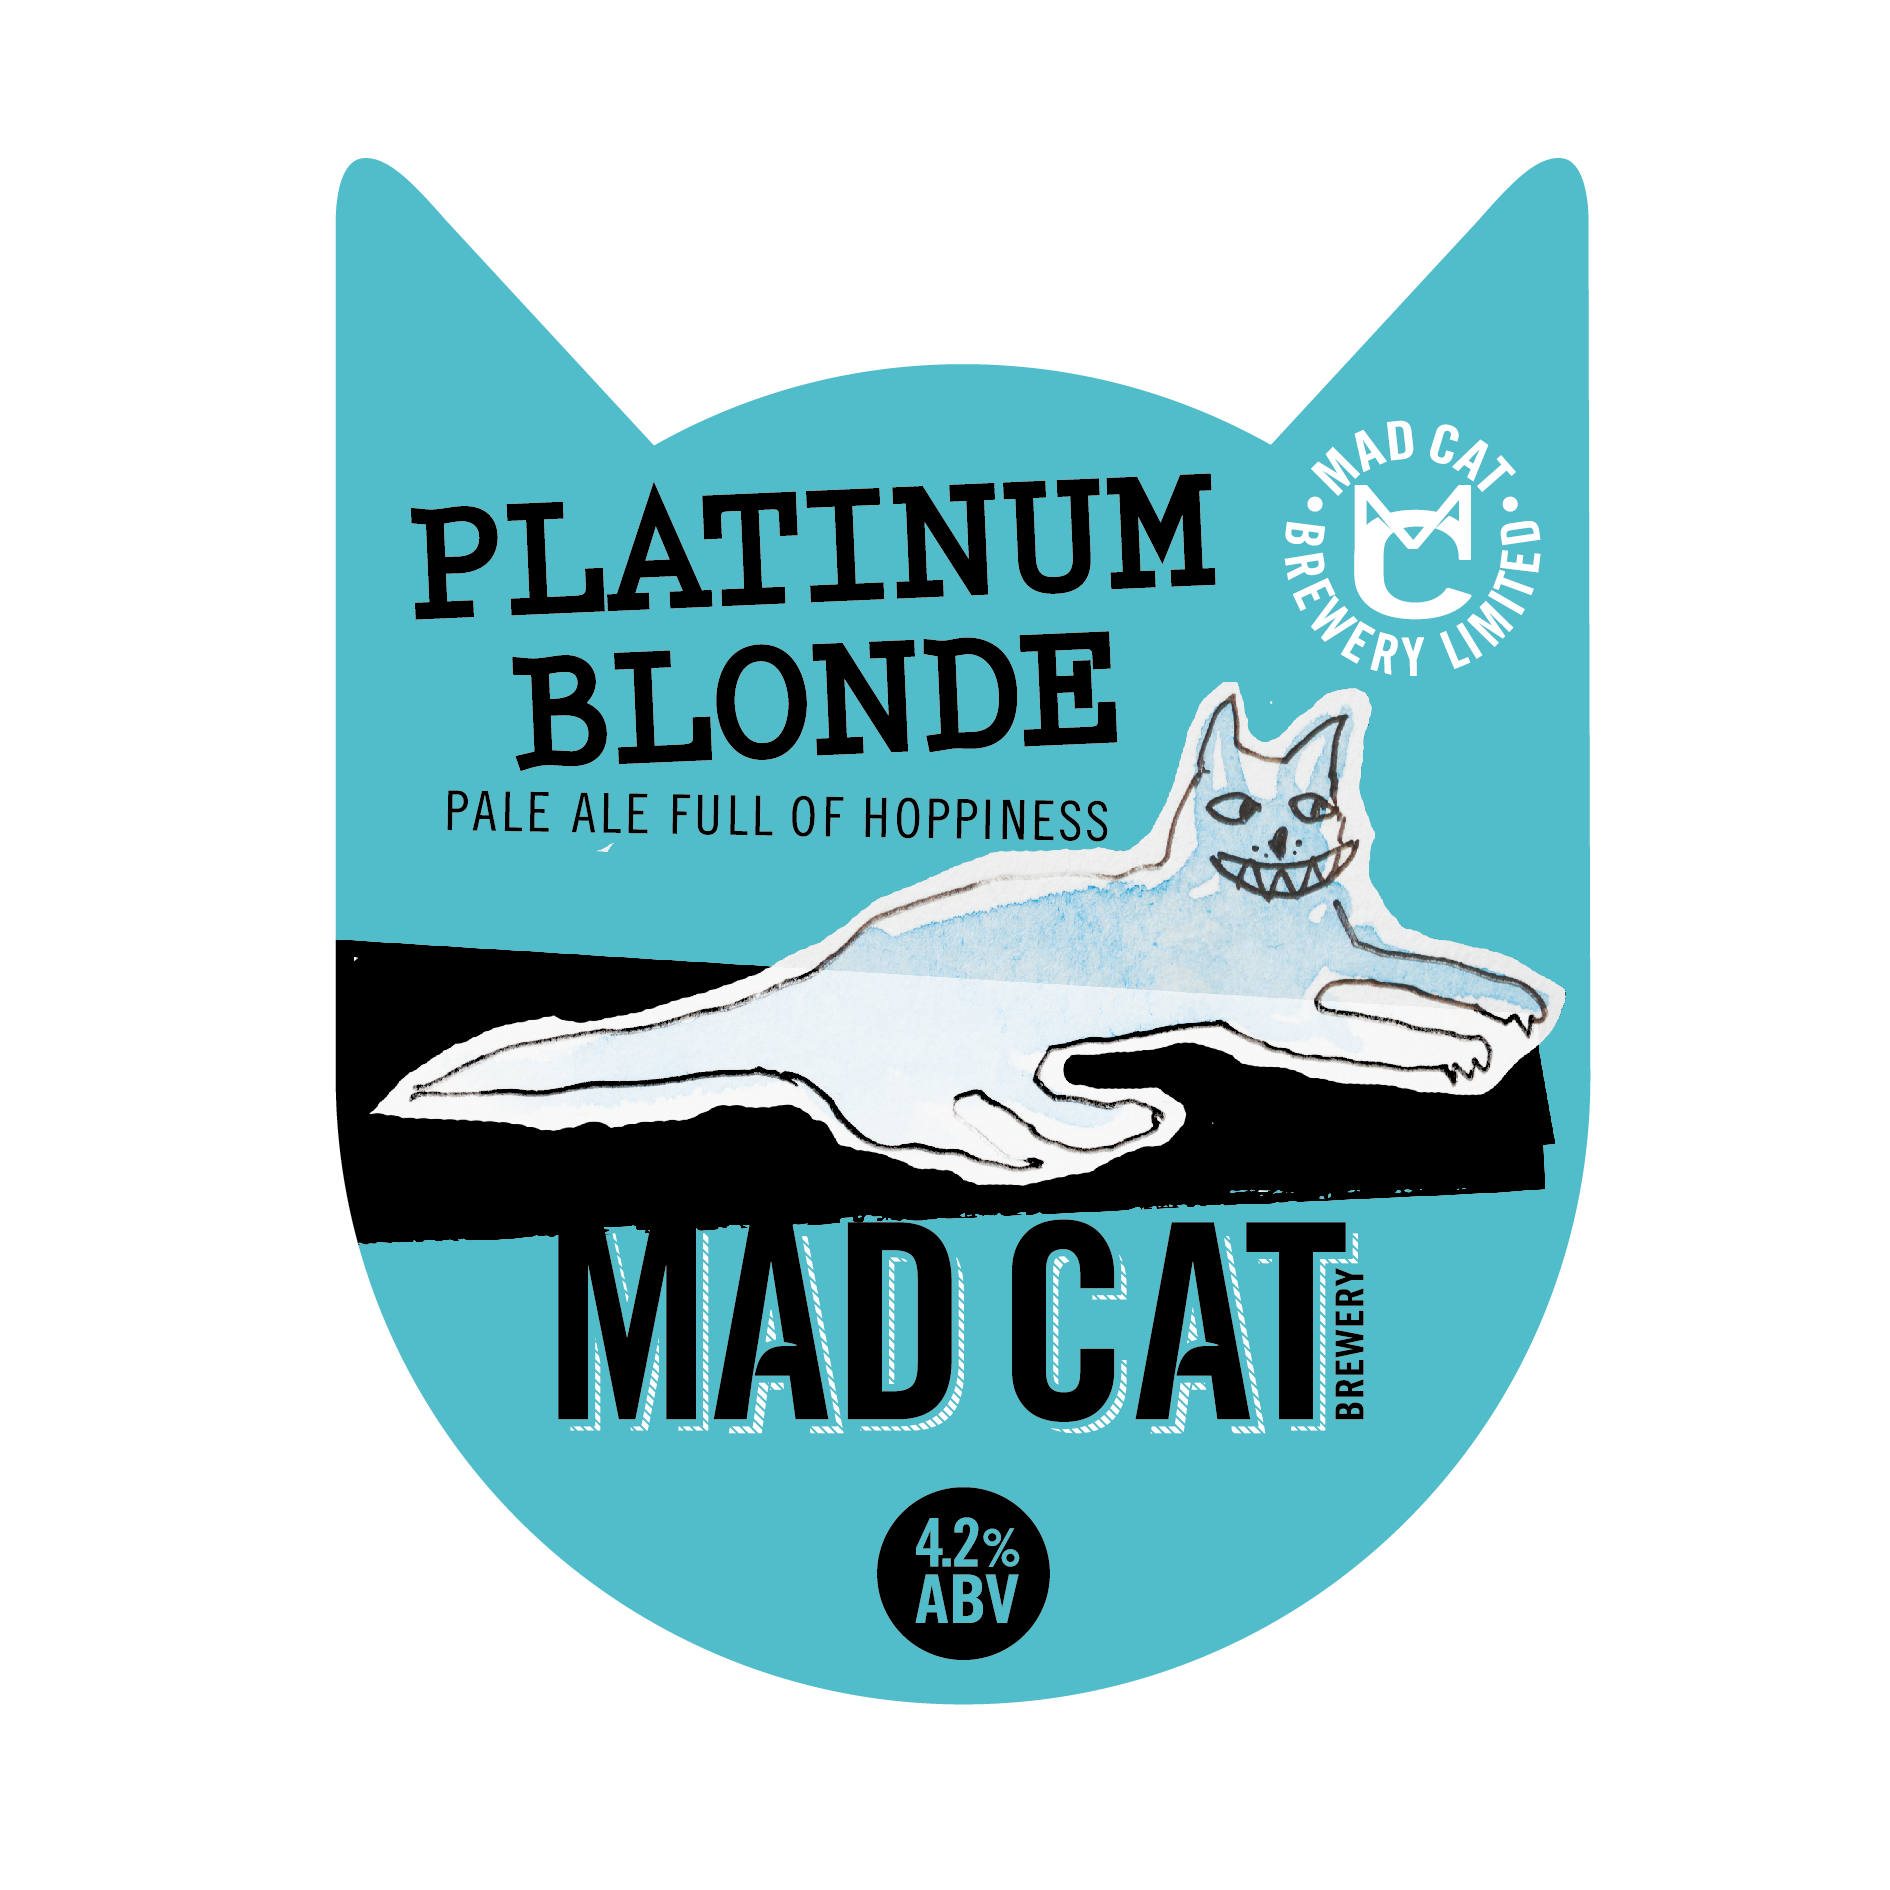 Platinum Blonde pump clip mad cat ales